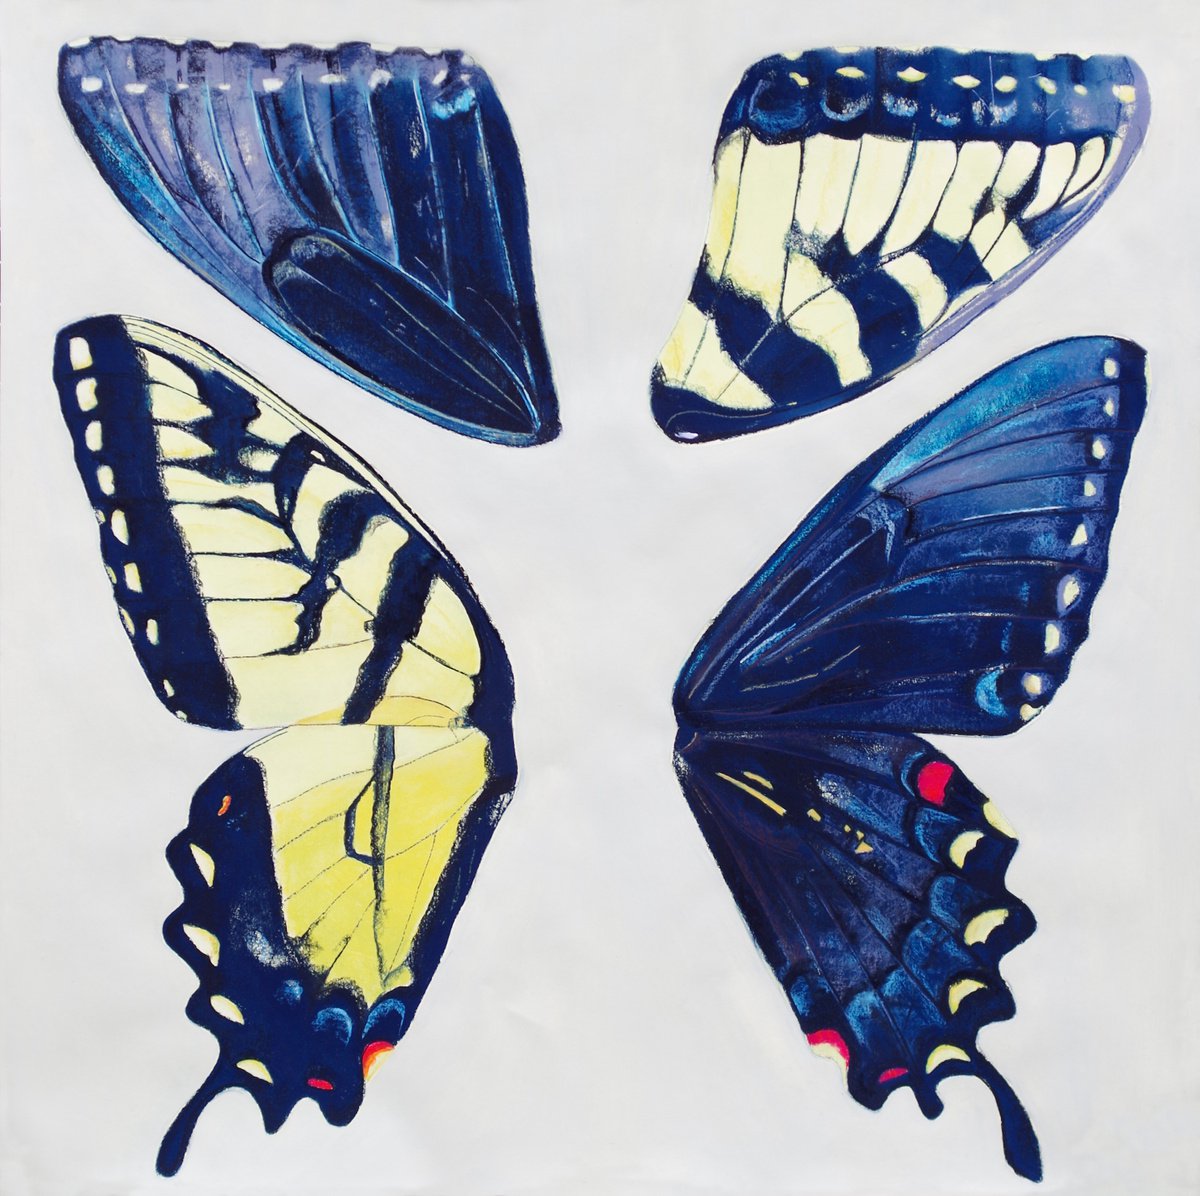 Papilio glaucus (tiger swallowtail) by Malwina Jachimczak